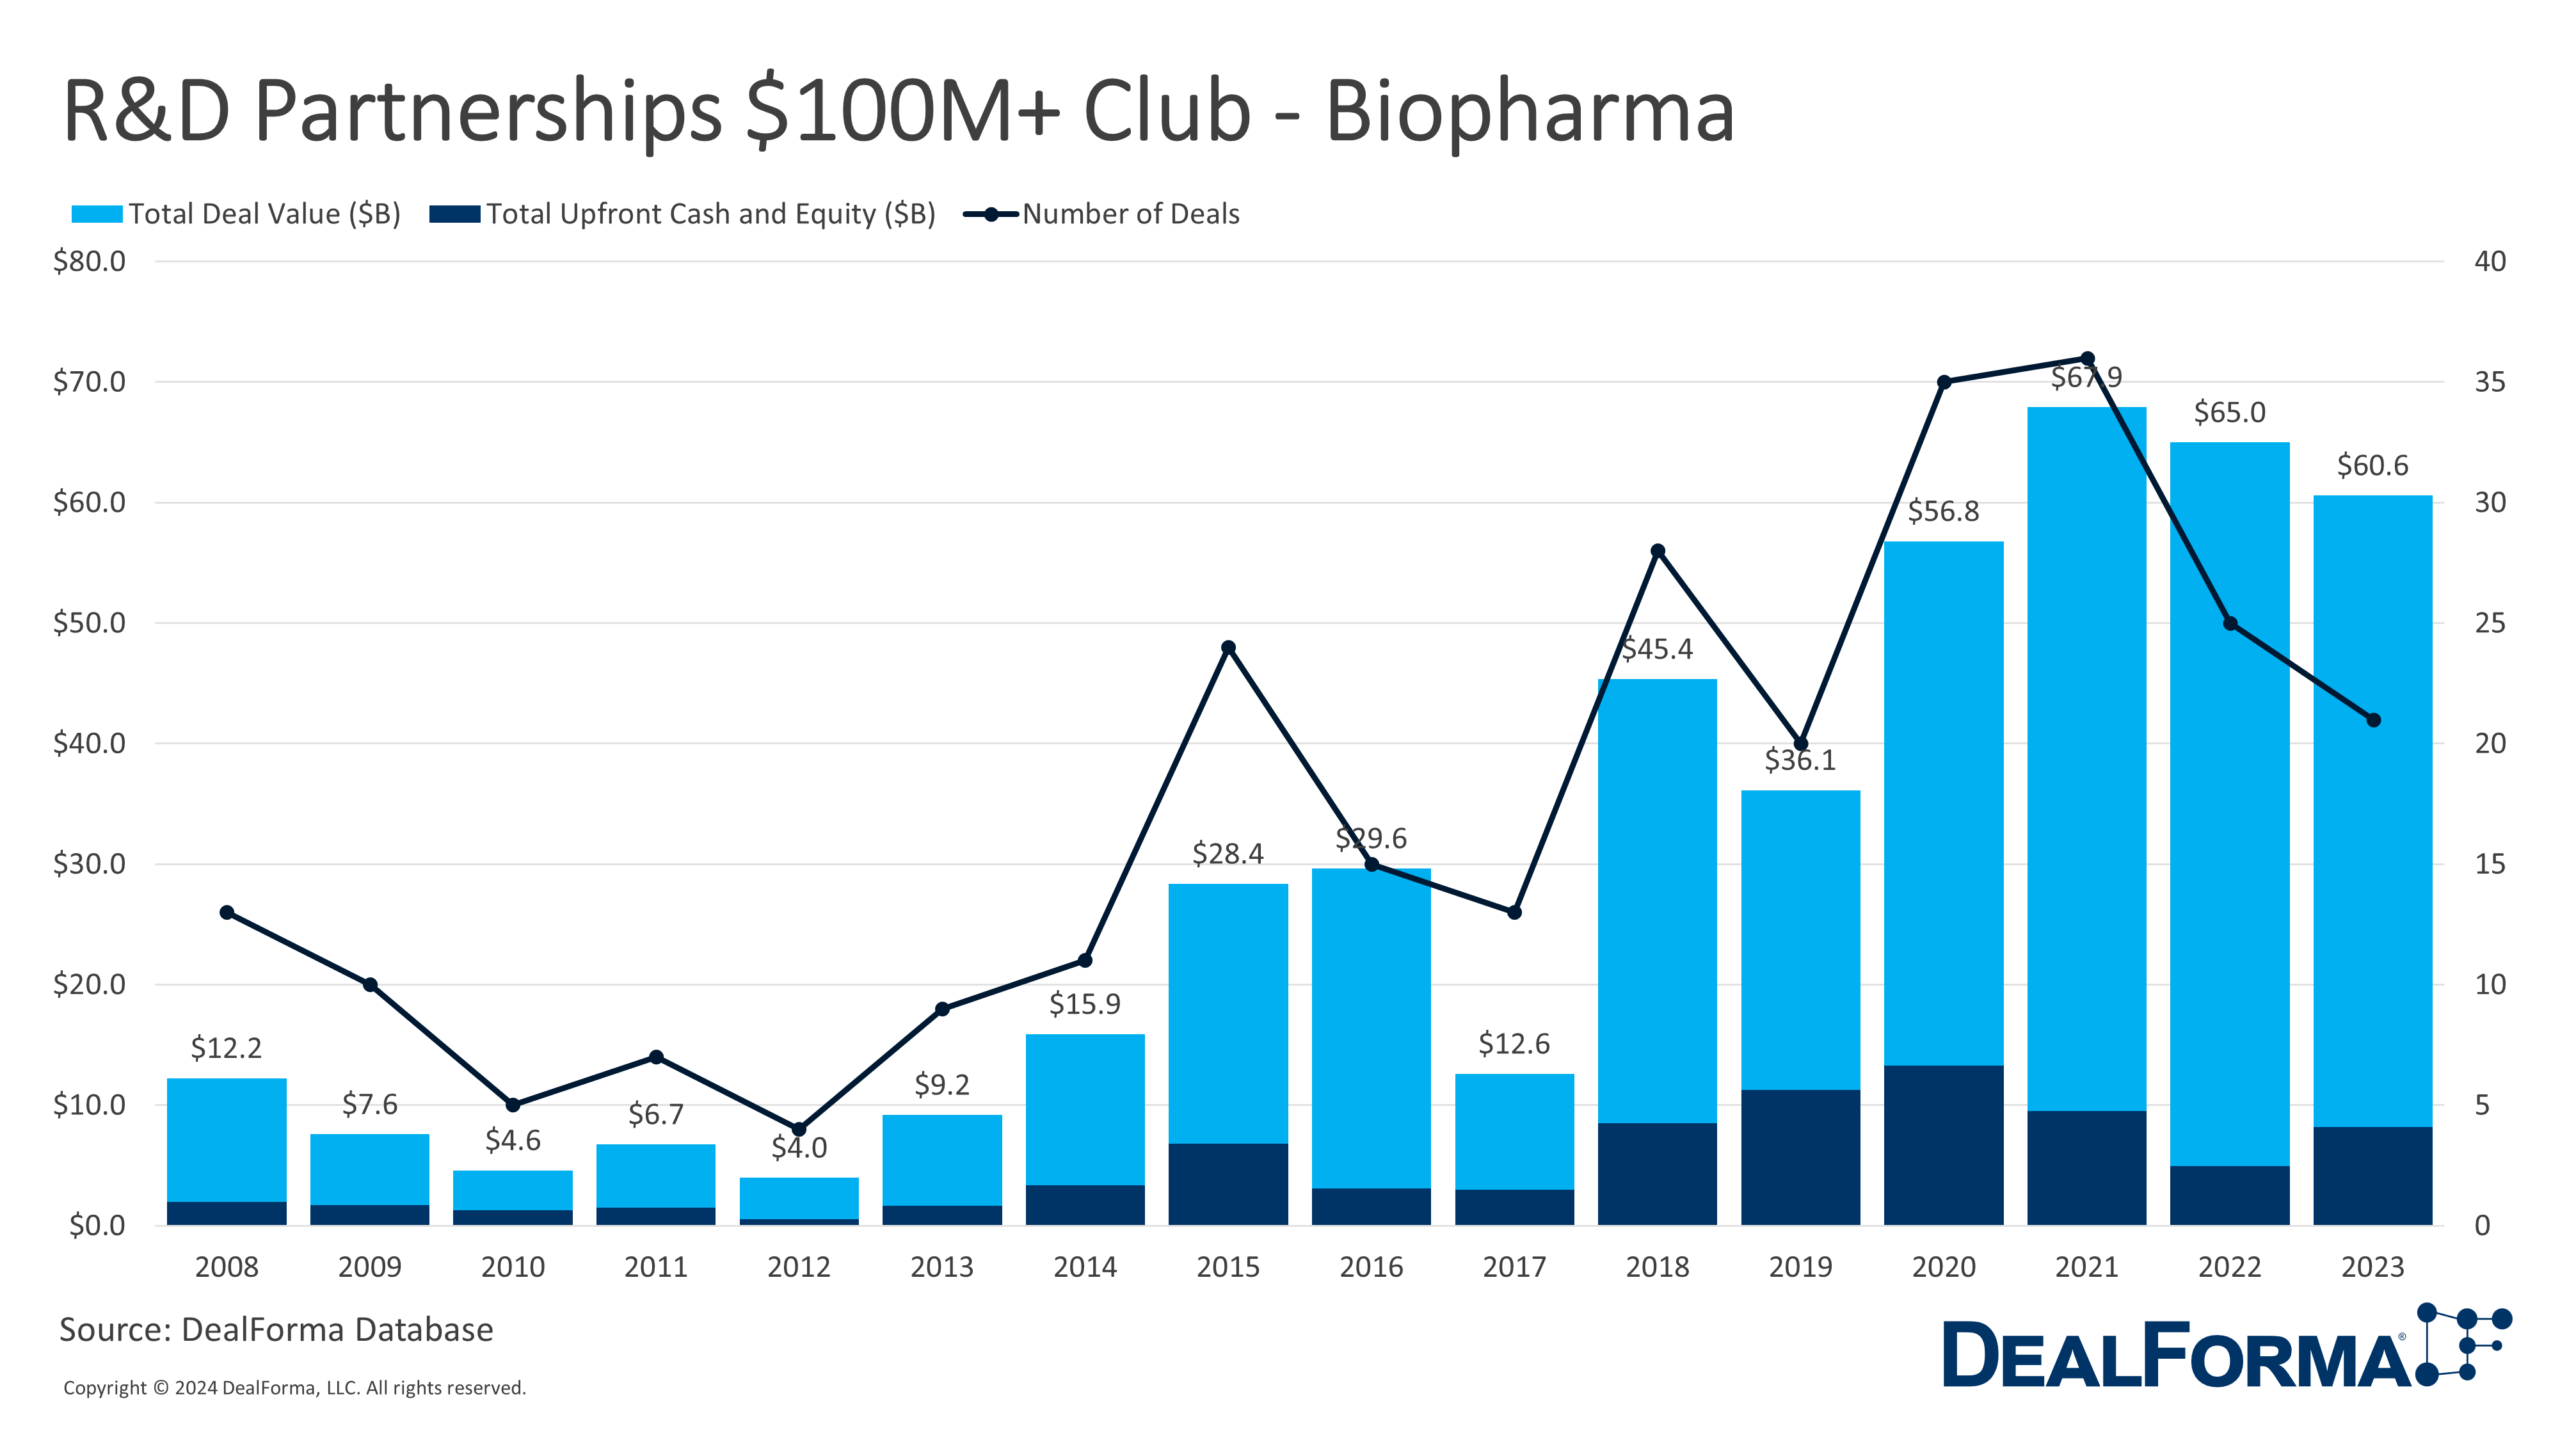 R&D Partnerships $100M+ Club - Biopharma